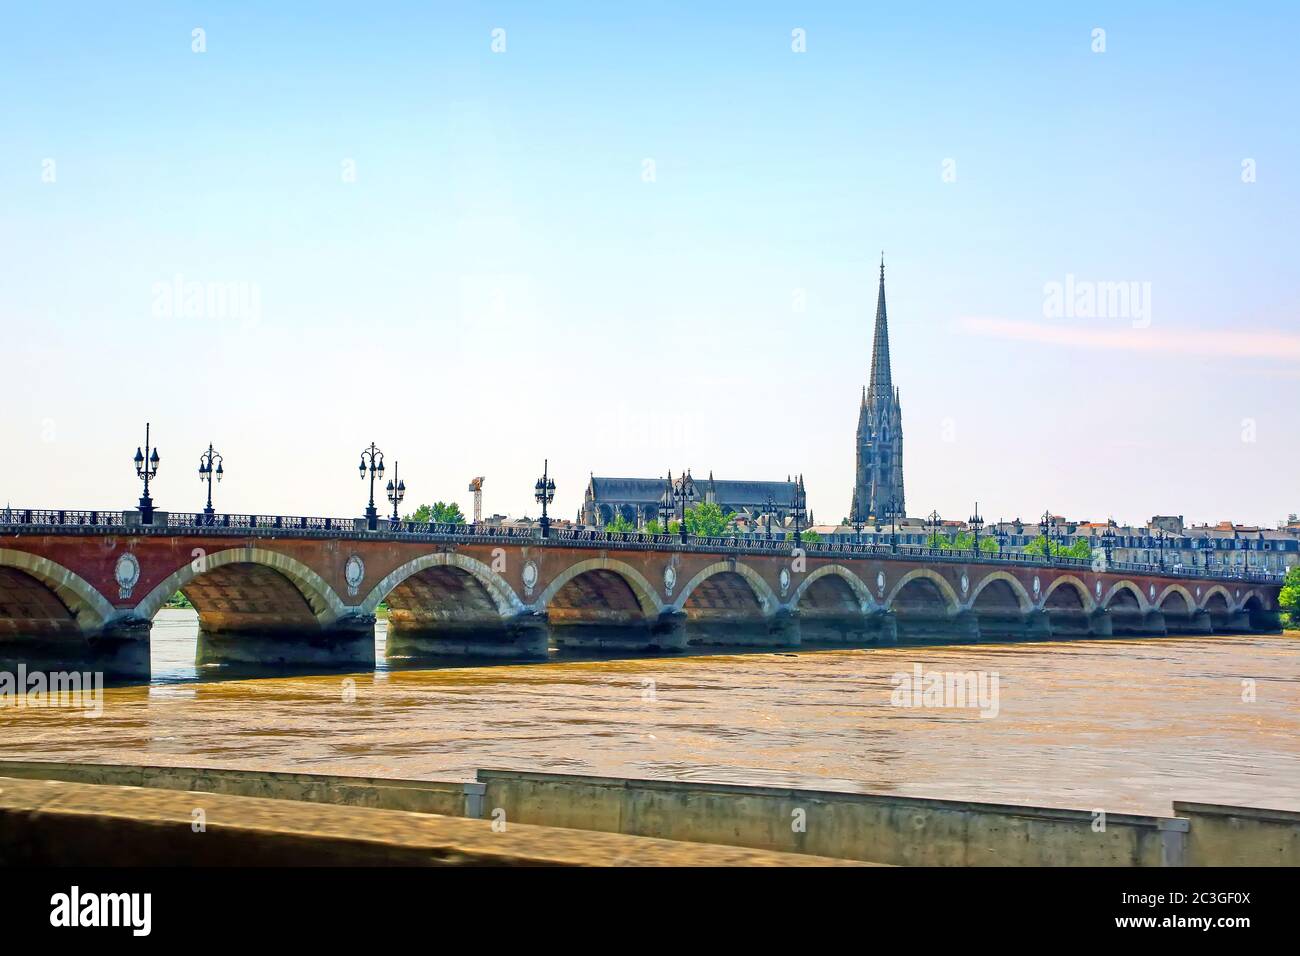 Blick auf die Pont de pierre, oder Steinbrücke in Englisch, ist eine Brücke in Bordeaux, Frankreich. Stockfoto